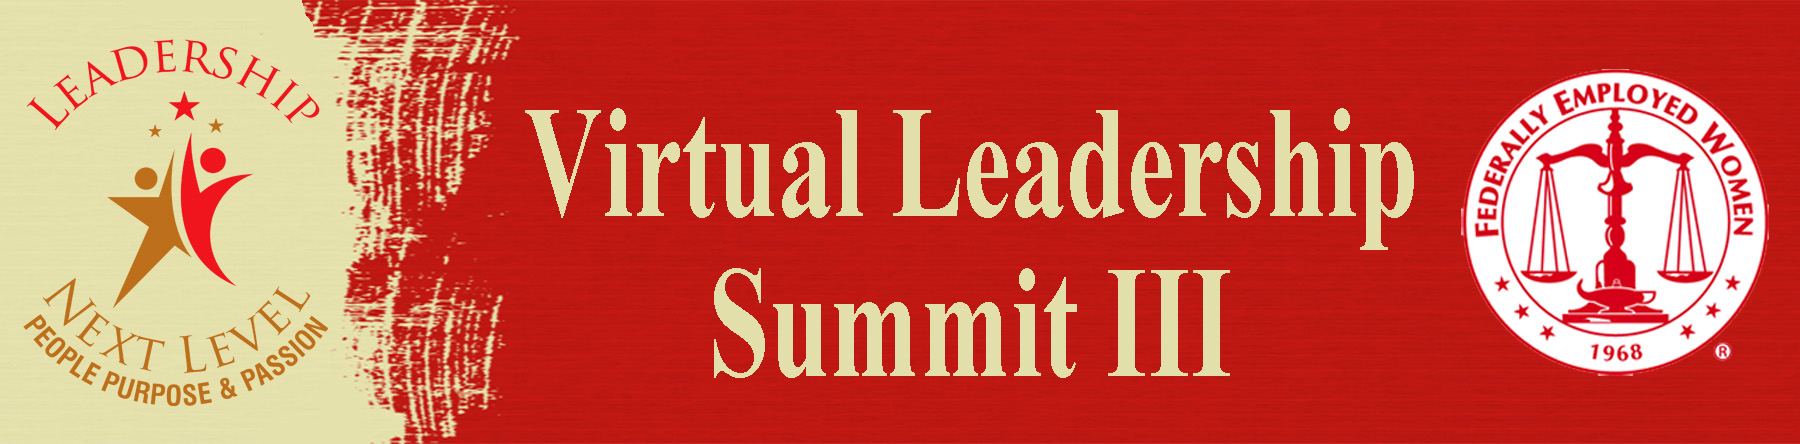 Virtual Leadership Summit III